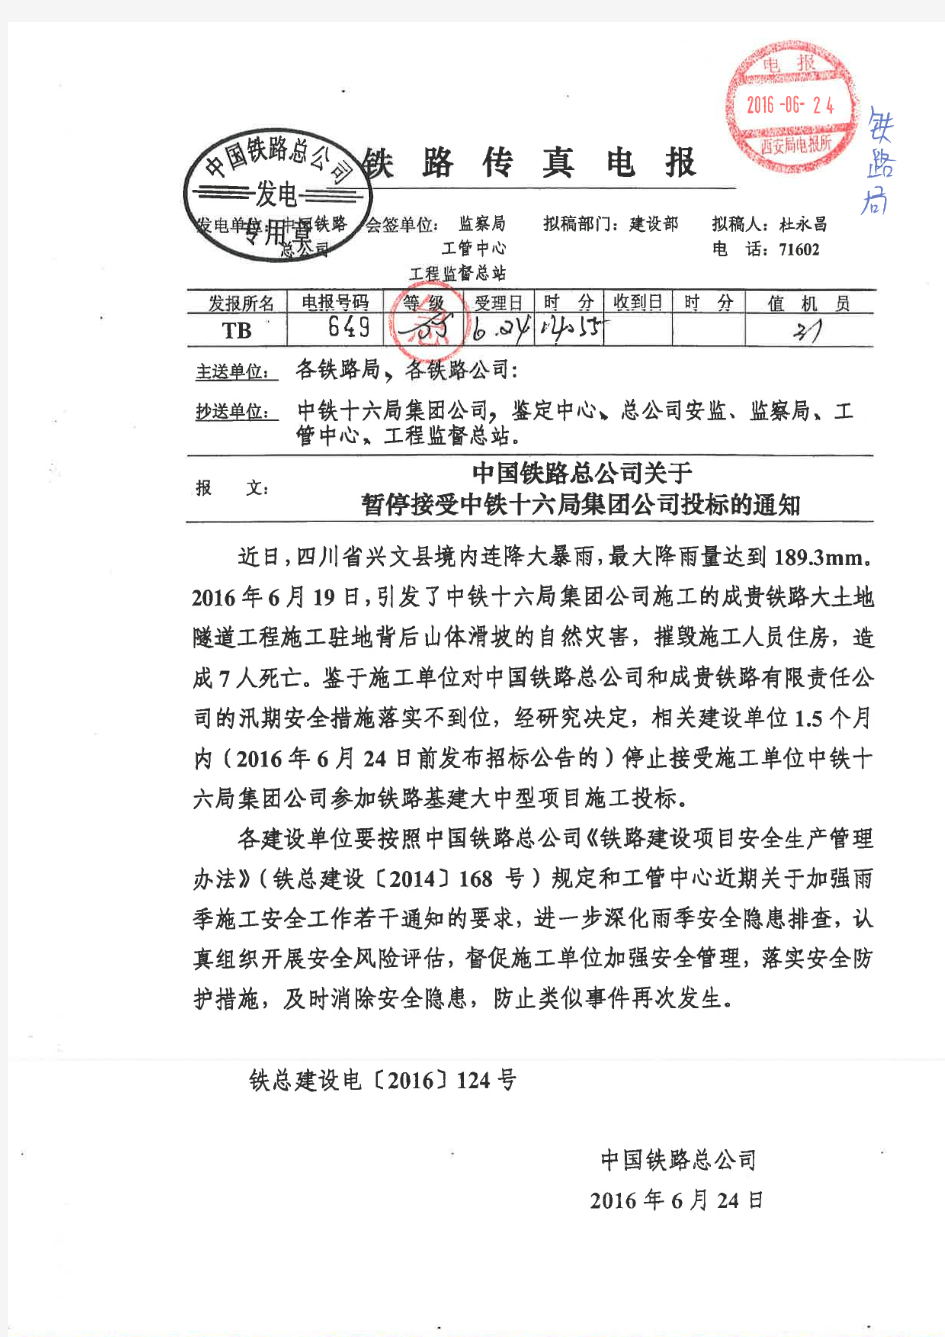 中国铁路总公司关于暂停接受中铁十六局集团公司投标的通知